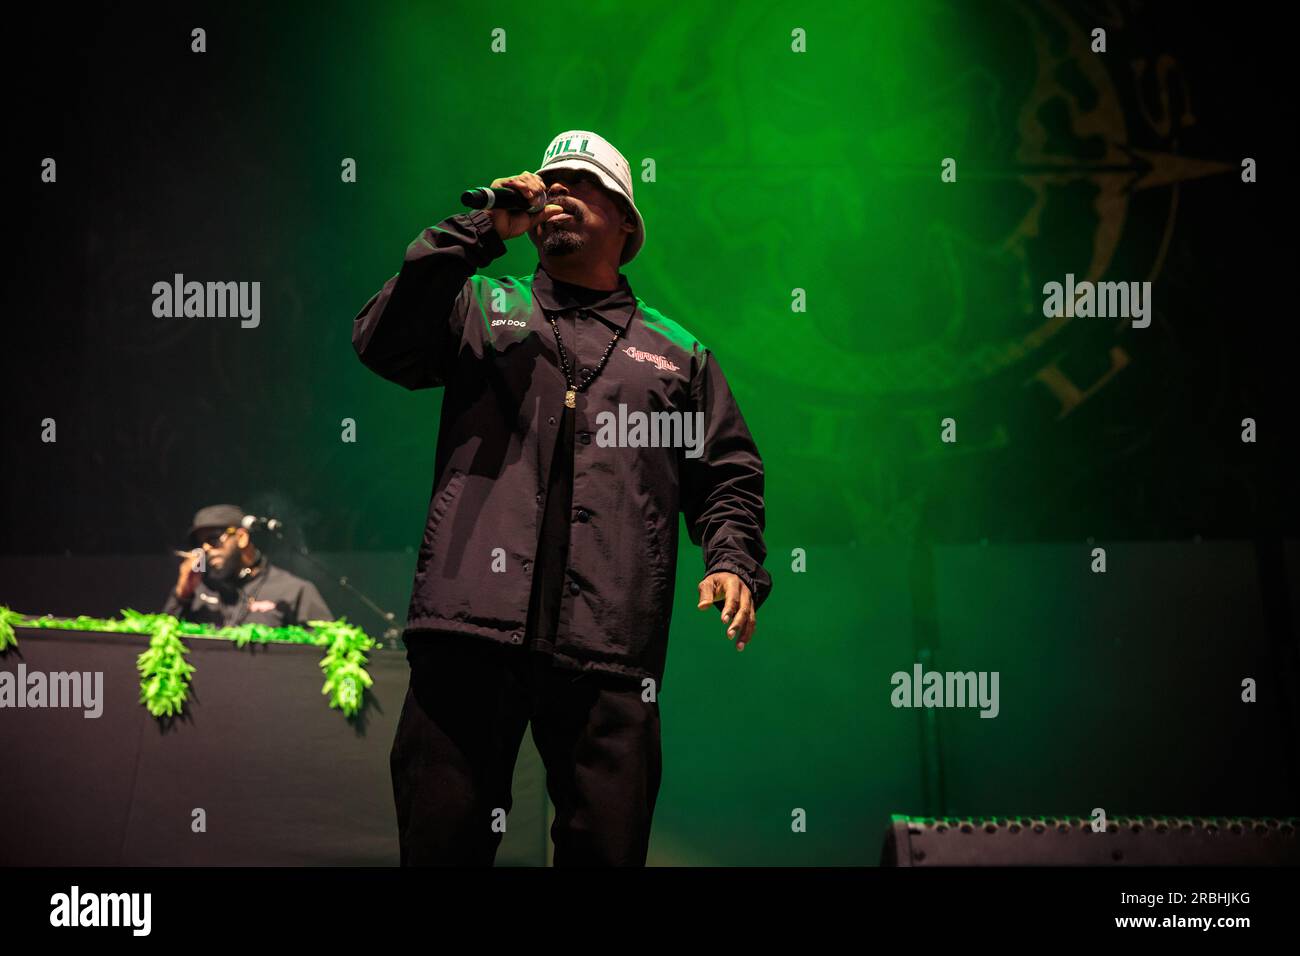 Sen Dog von Cypress Hill tritt auf der Bühne auf, mit einem Eimerhut, einem schwarzen Trainingsanzug und einem Mikrofon. Stockfoto